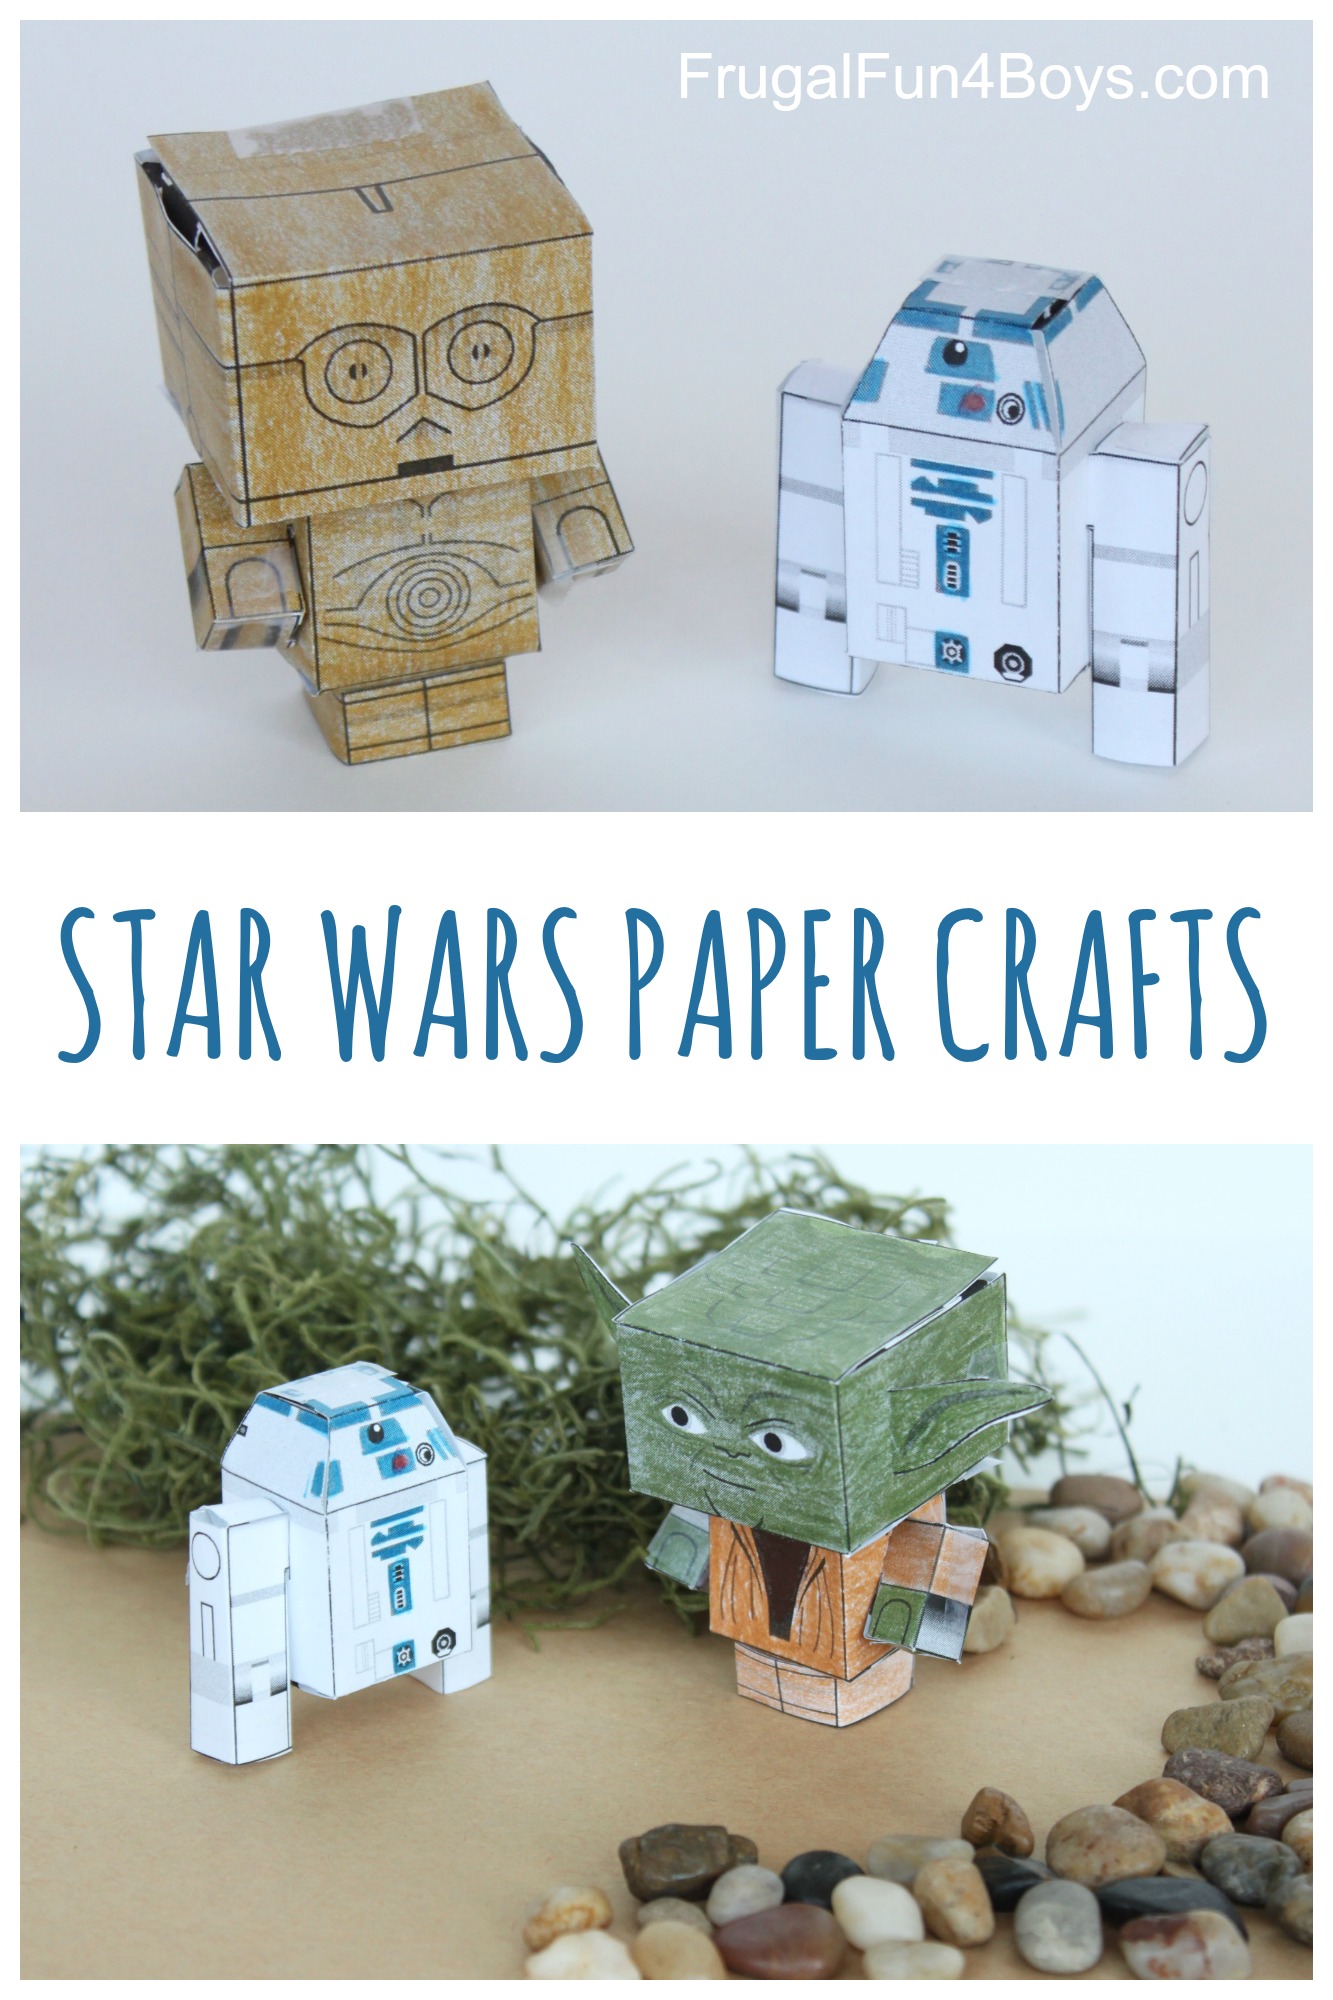 Star Wars Paper Crafts to Make